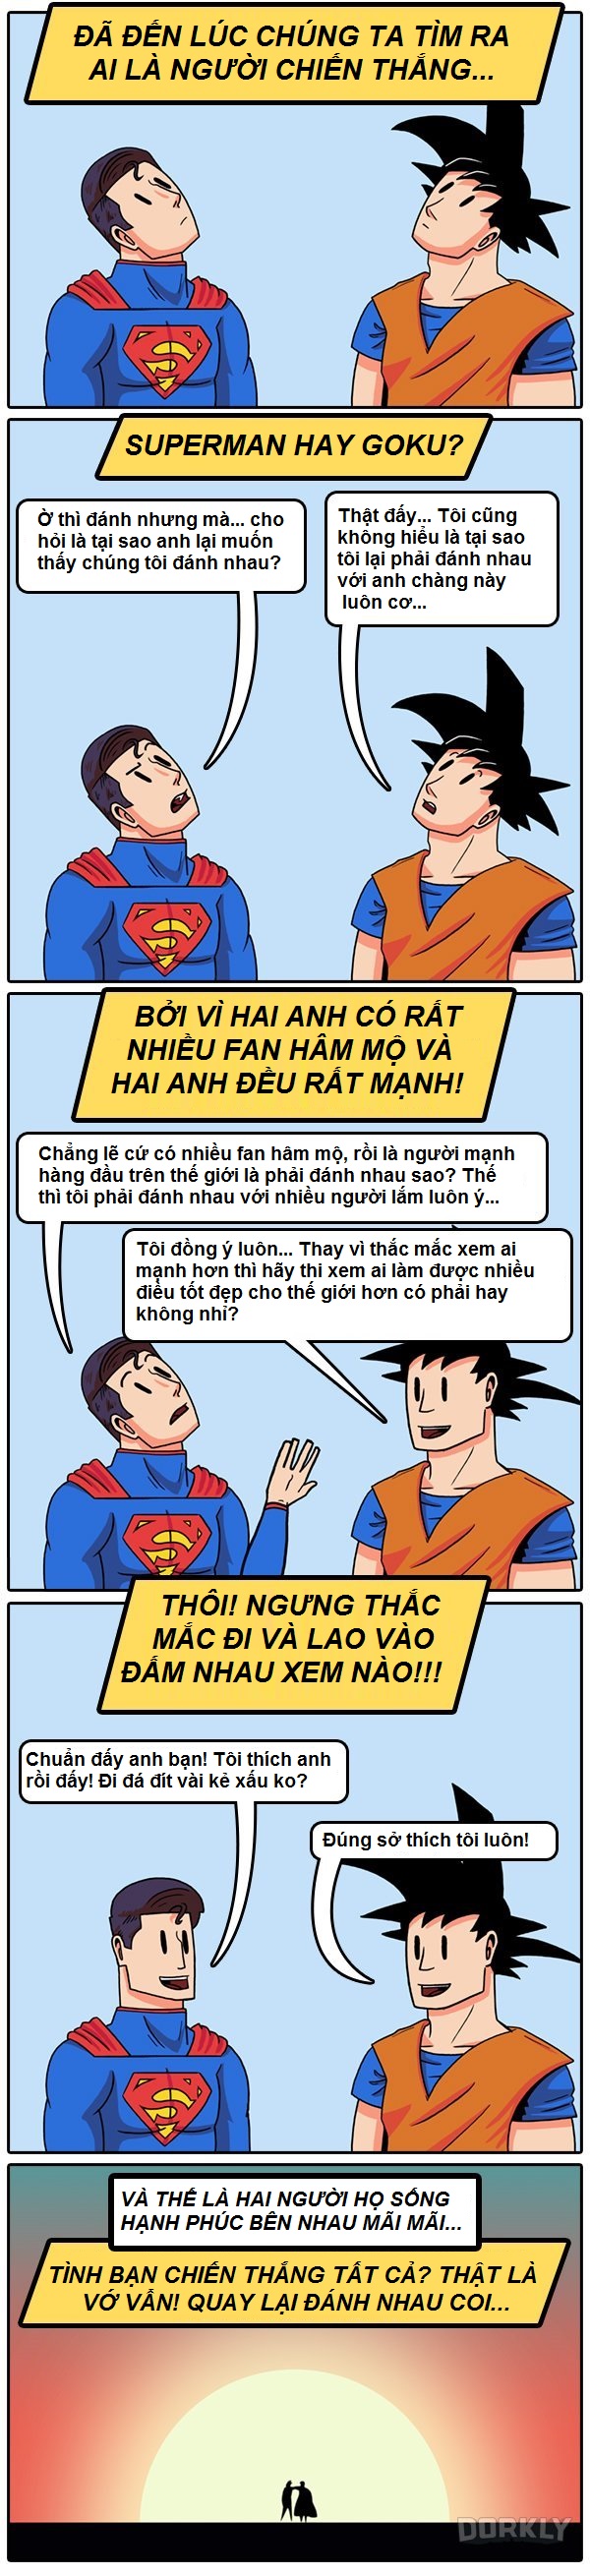 Nếu Superman và Son Goku đấu với nhau thì ai sẽ thắng?